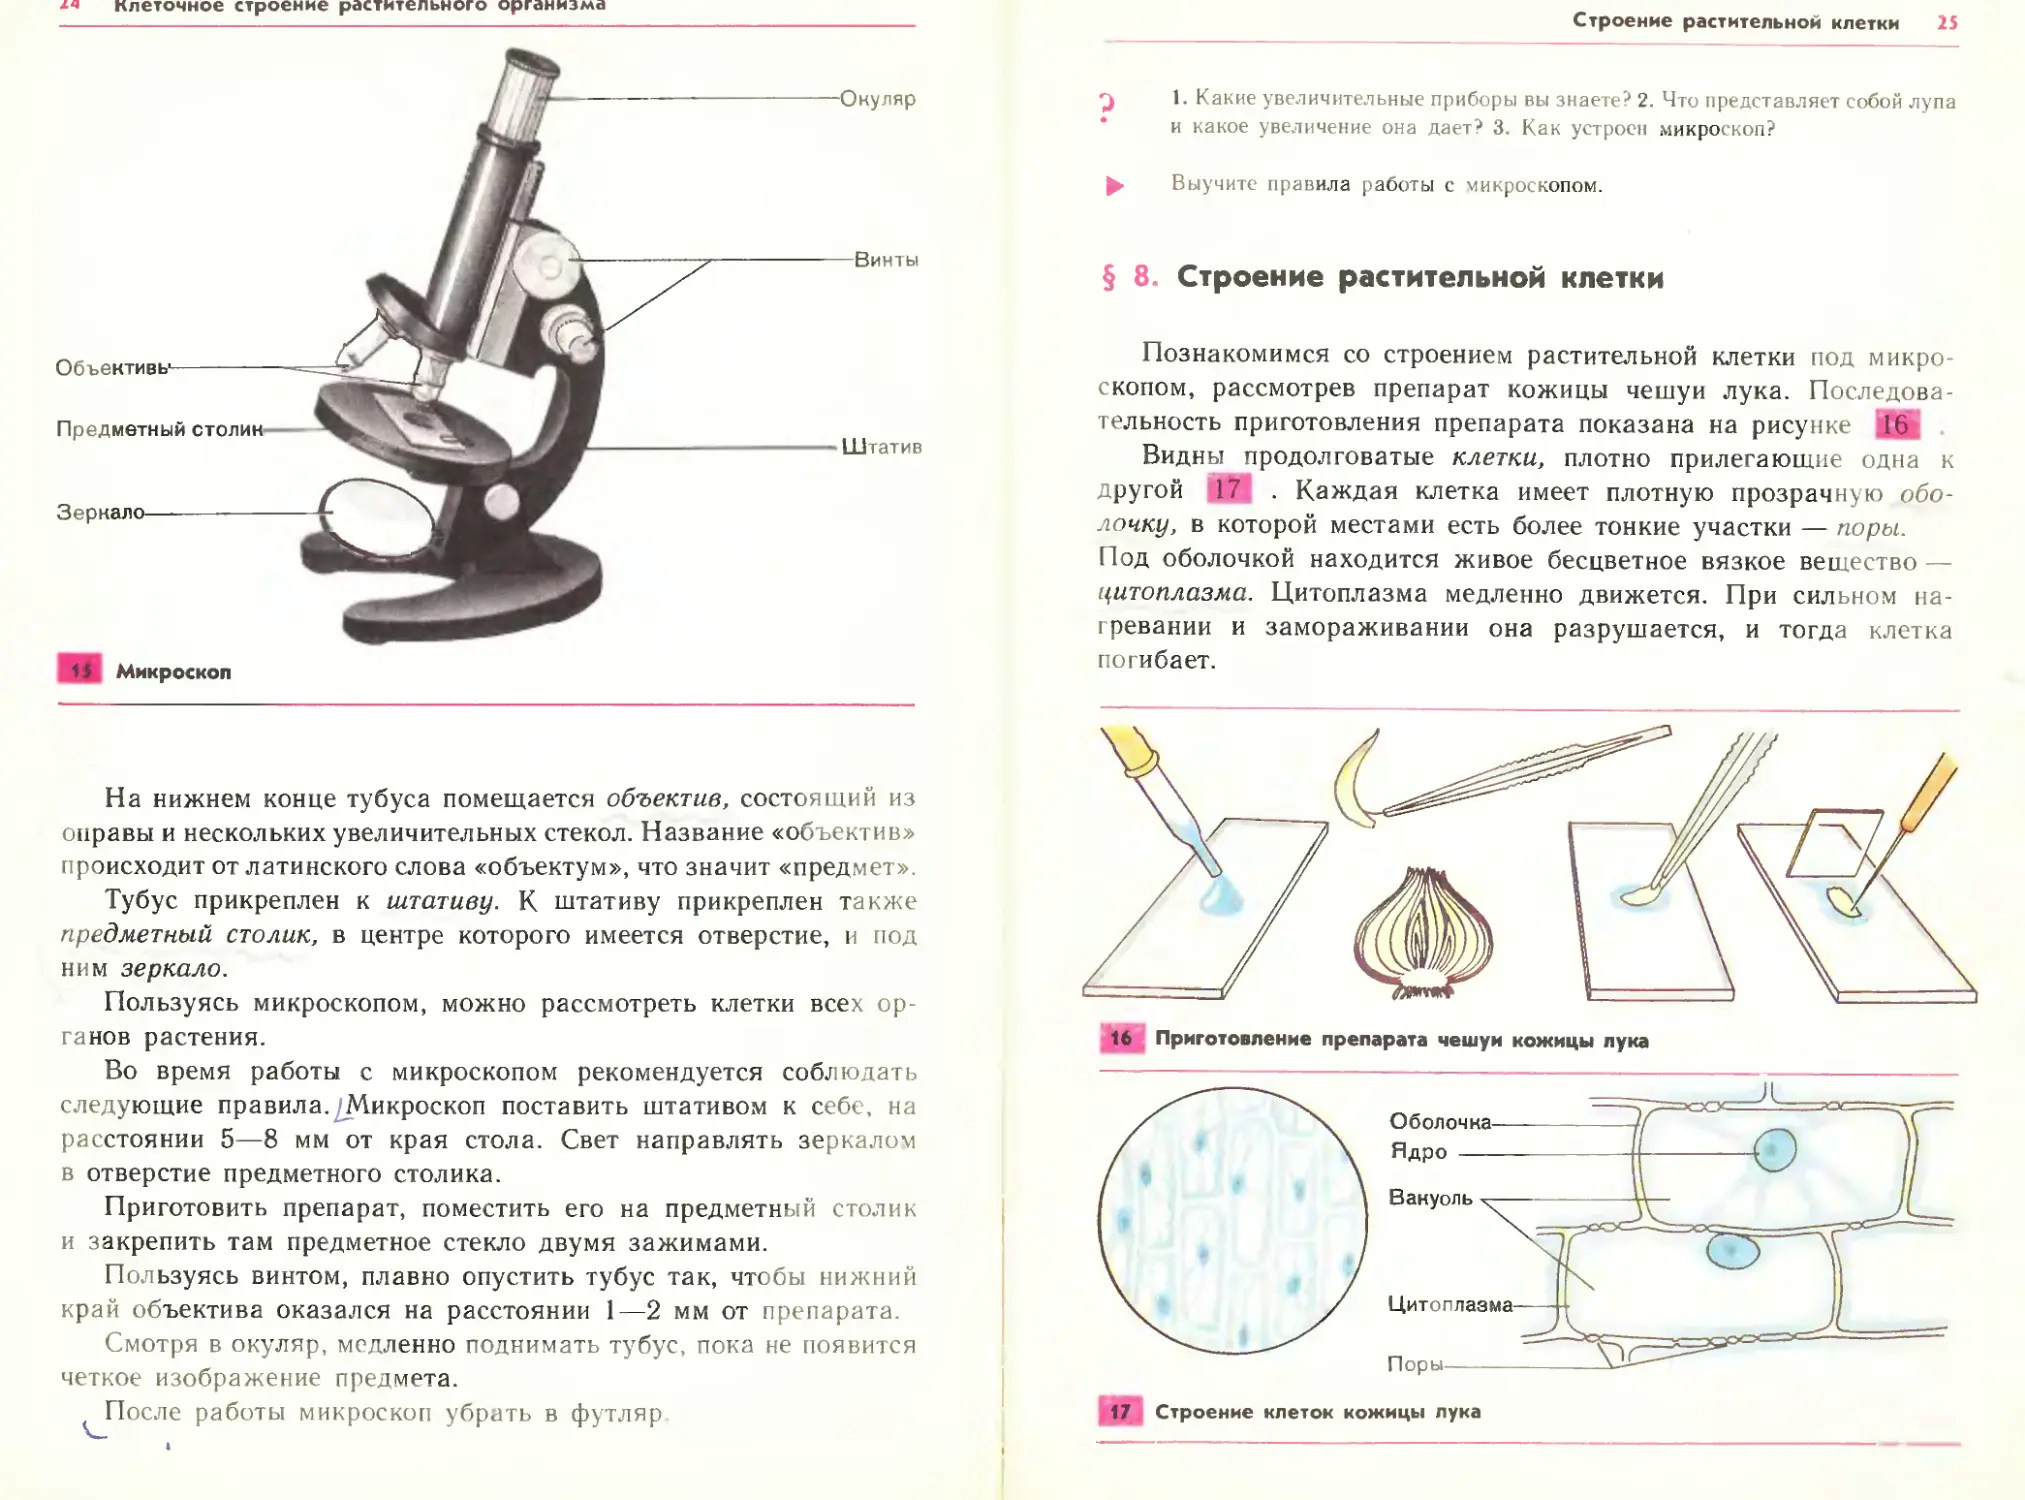 Зачем микроскопу тубус. Строение микроскопа тубус. Строение предметного столика. Микроскоп строение и описание тубус. Тубус микроскопа прикреплен к столику.